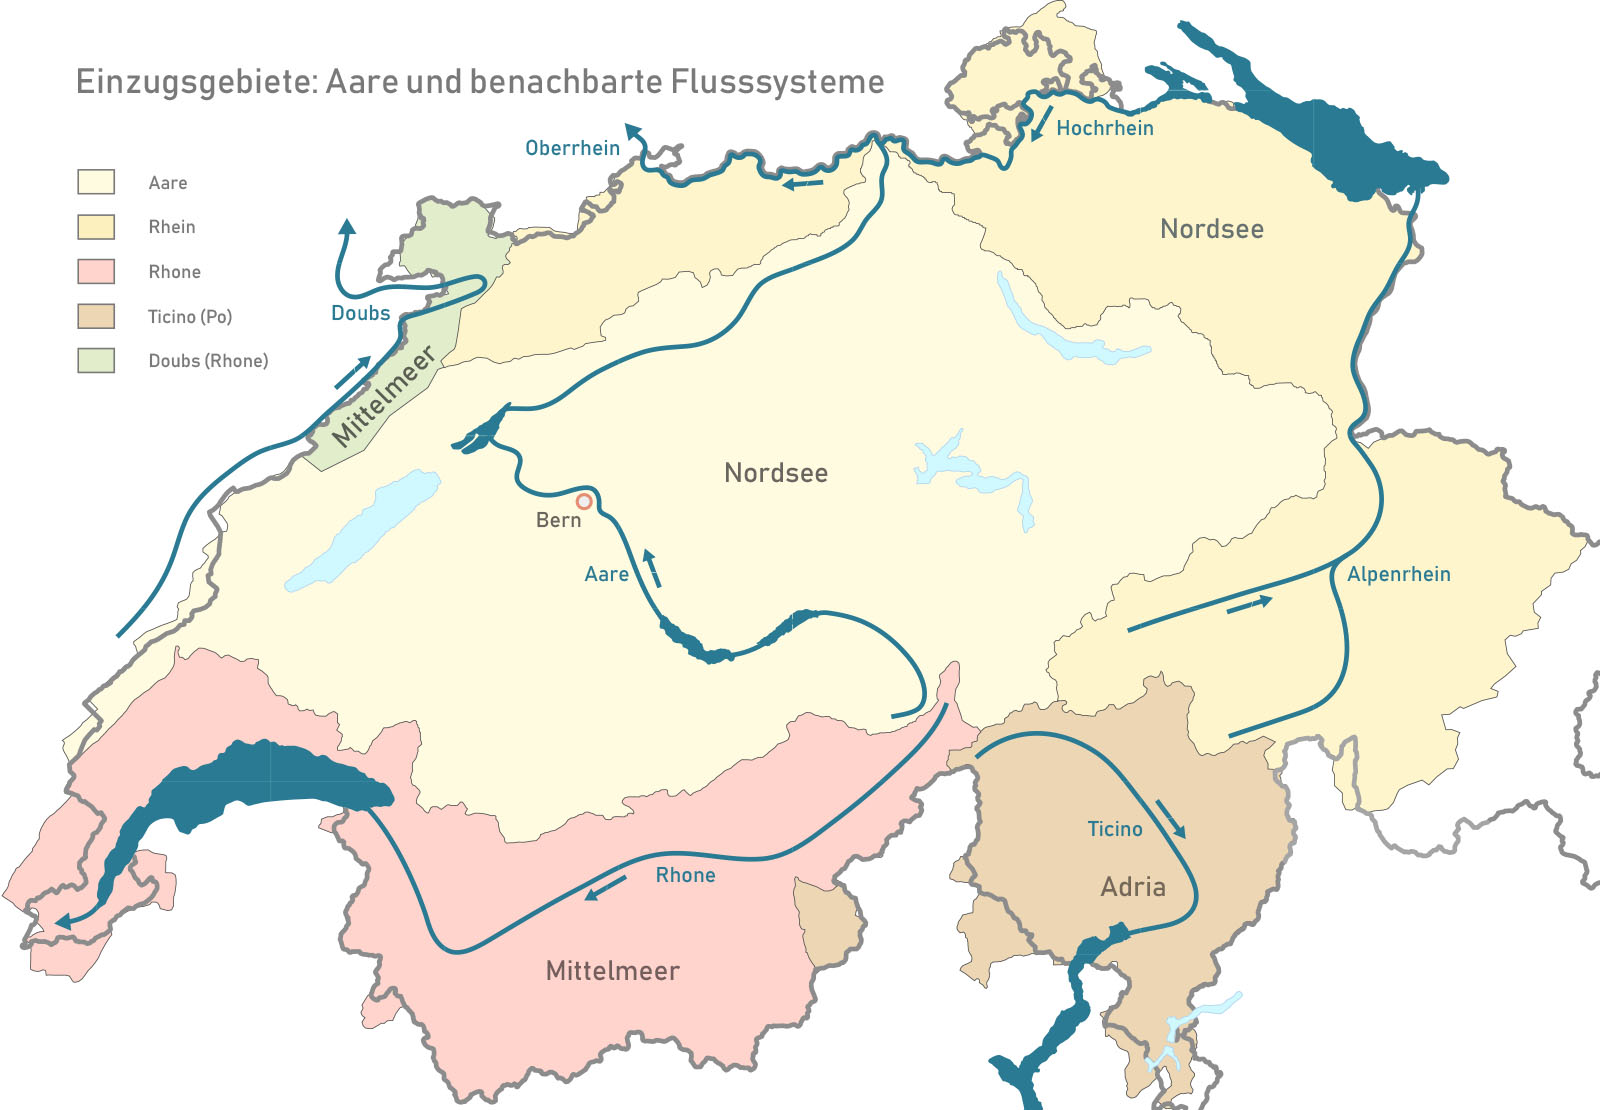 Gegenwärtige Einzugsgebiete der Aare und benachbarter Flusssysteme